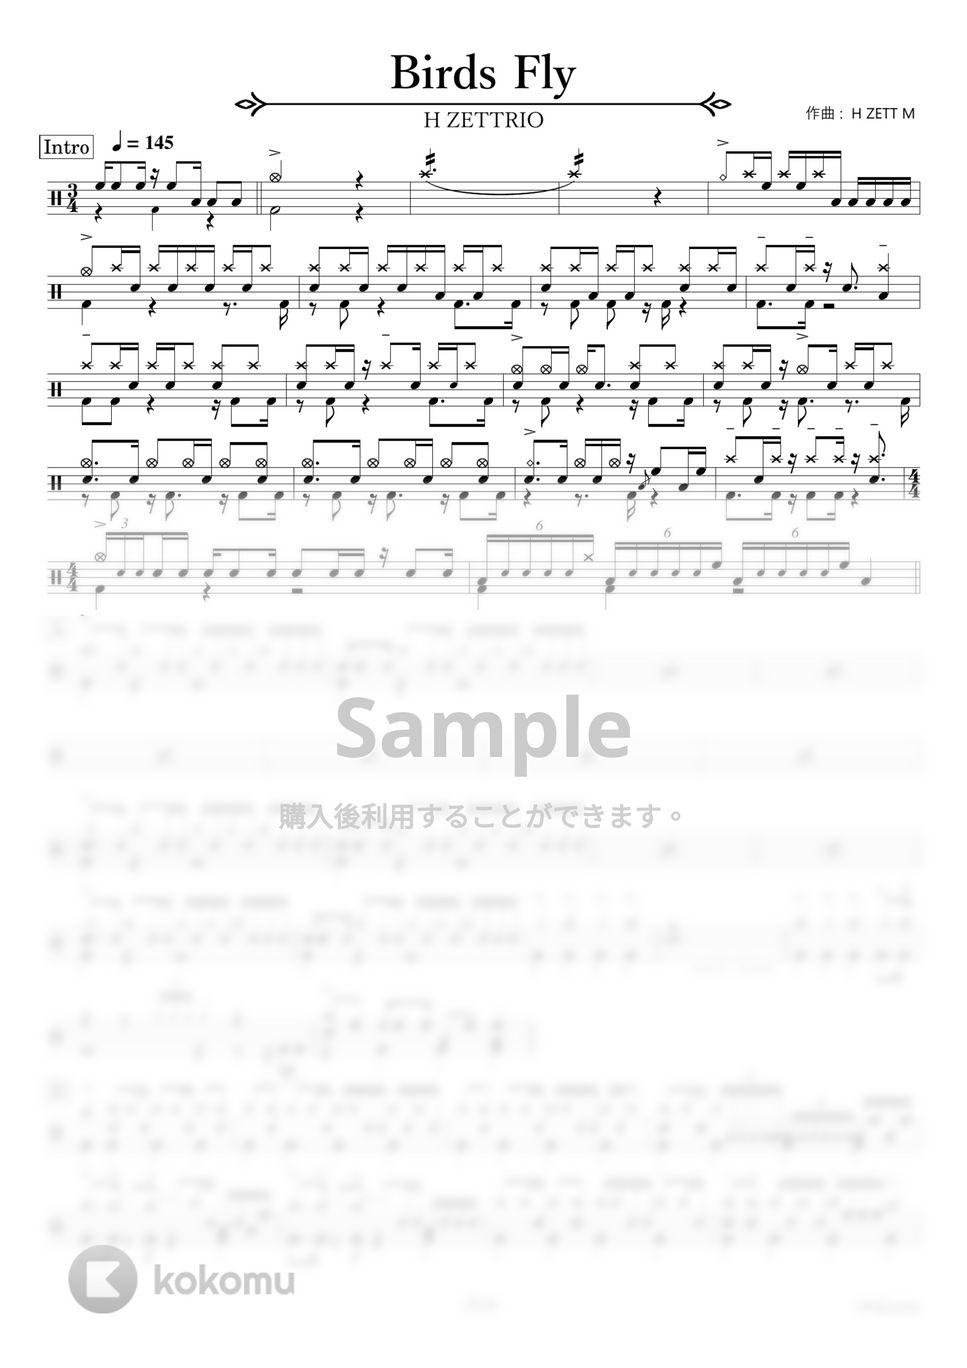 H ZETTRIO - Birds Fly 【ドラム楽譜〔完コピ〕】.pdf by HYdrums